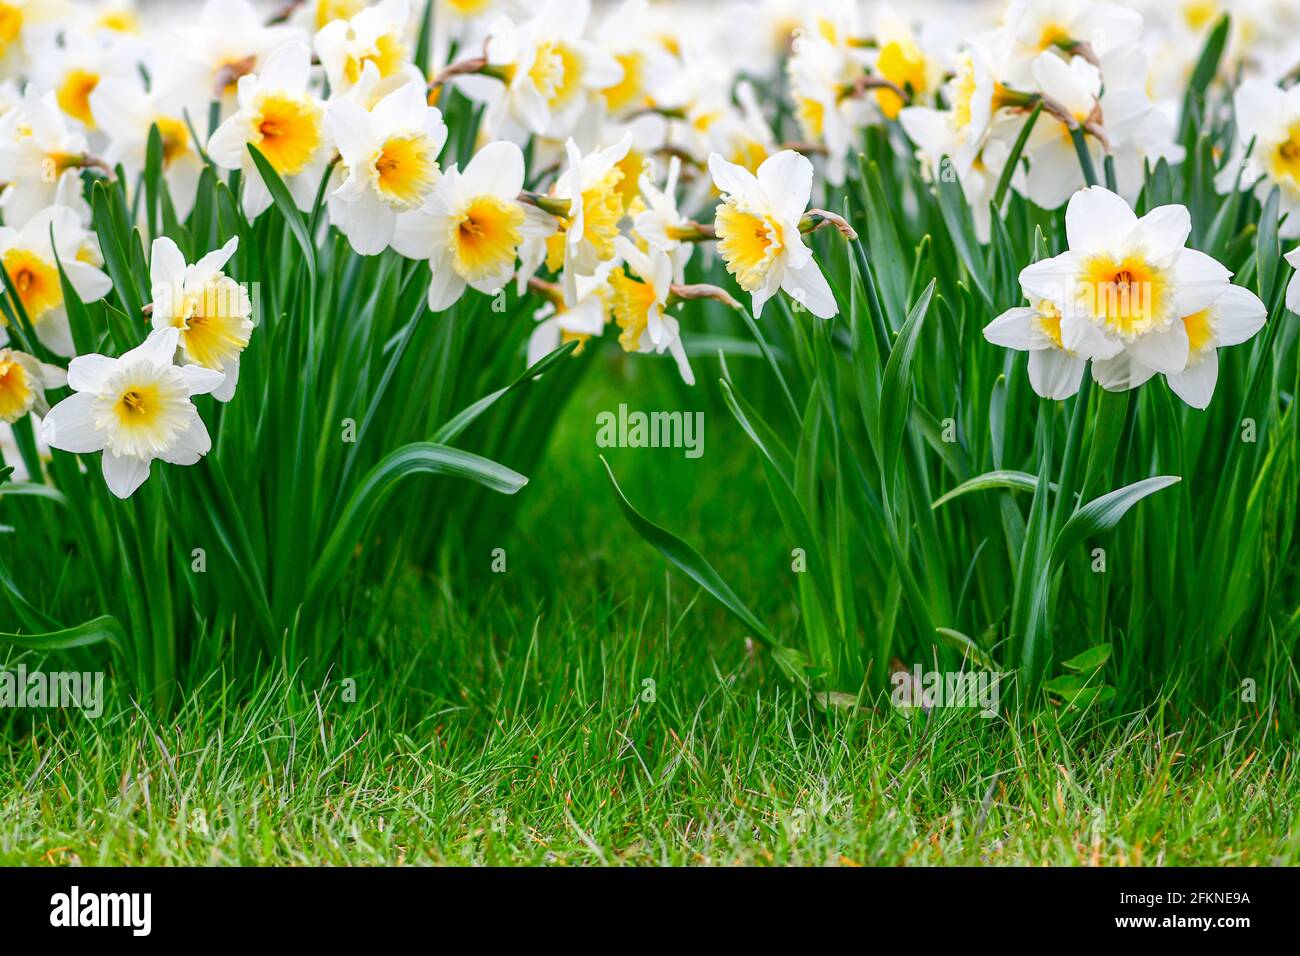 Magnifique fleur de jonquille jaune et blanche, narcisse, fleur vivace de printemps et plantes parmi l'herbe verte dans un champ, un parc ou un jardin, gros plan Banque D'Images